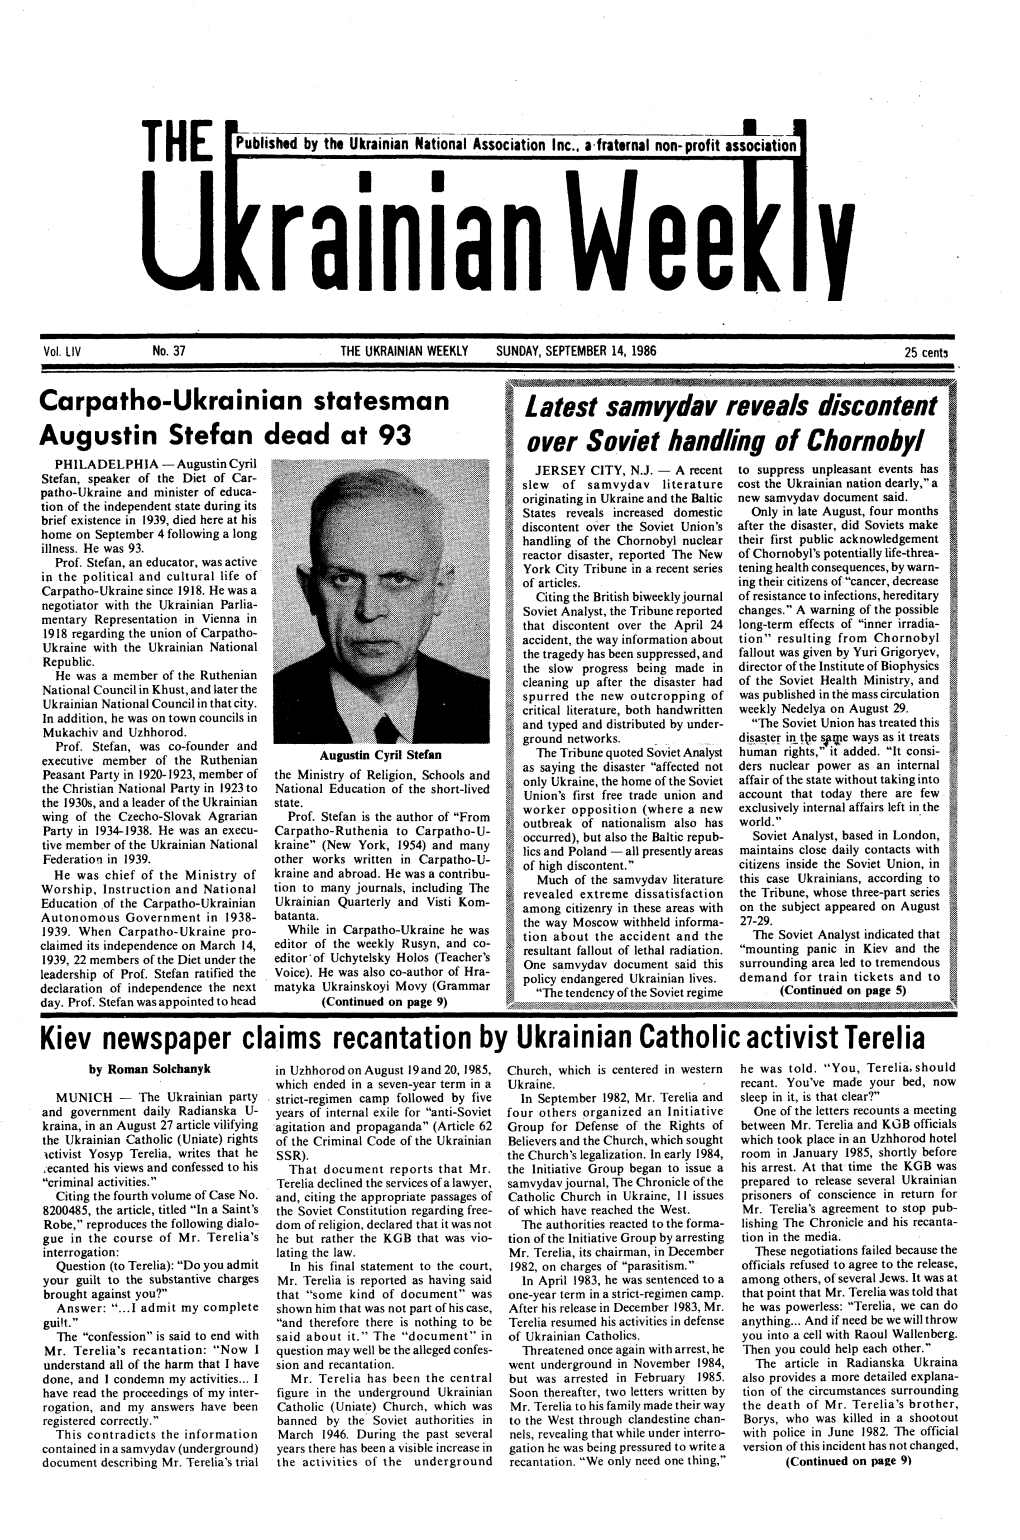 The Ukrainian Weekly 1986